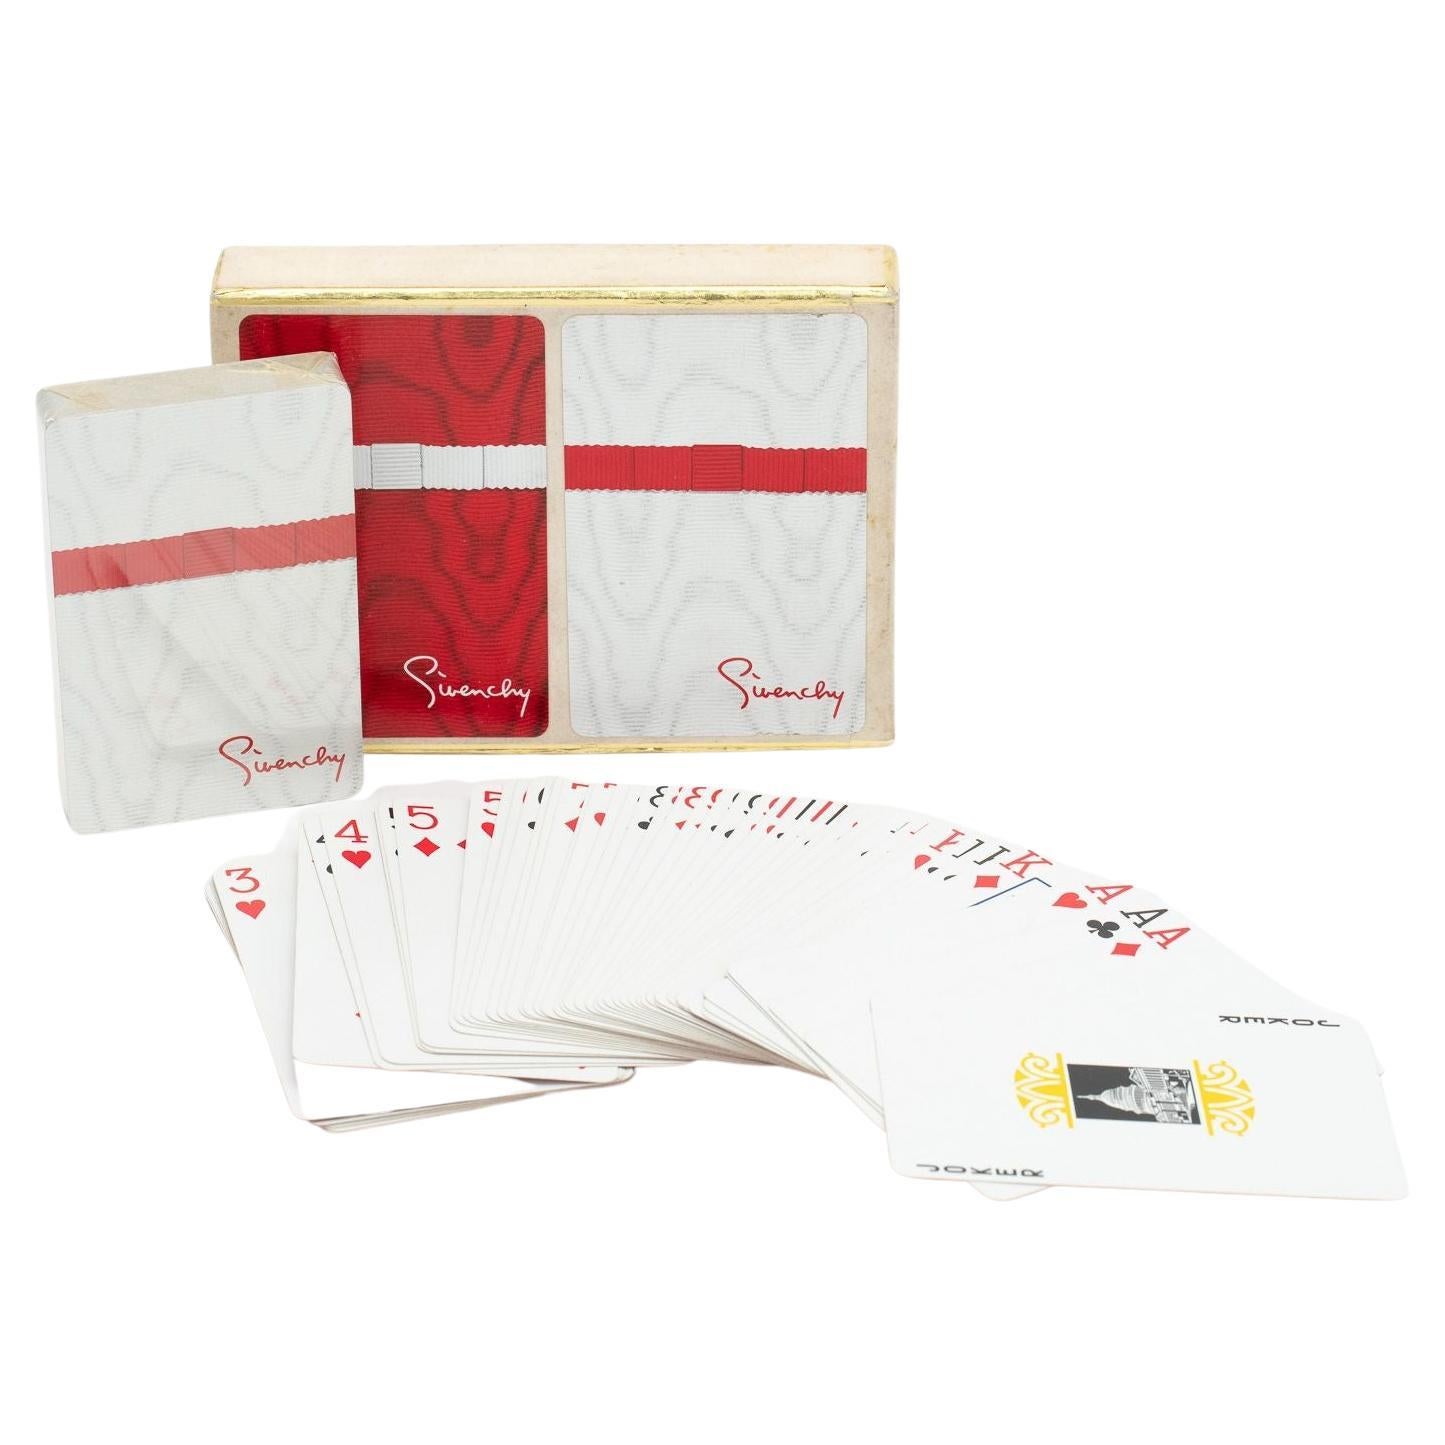 Givenchy Pokerkarten mit 2 Karten in Rot/Weiß im Angebot